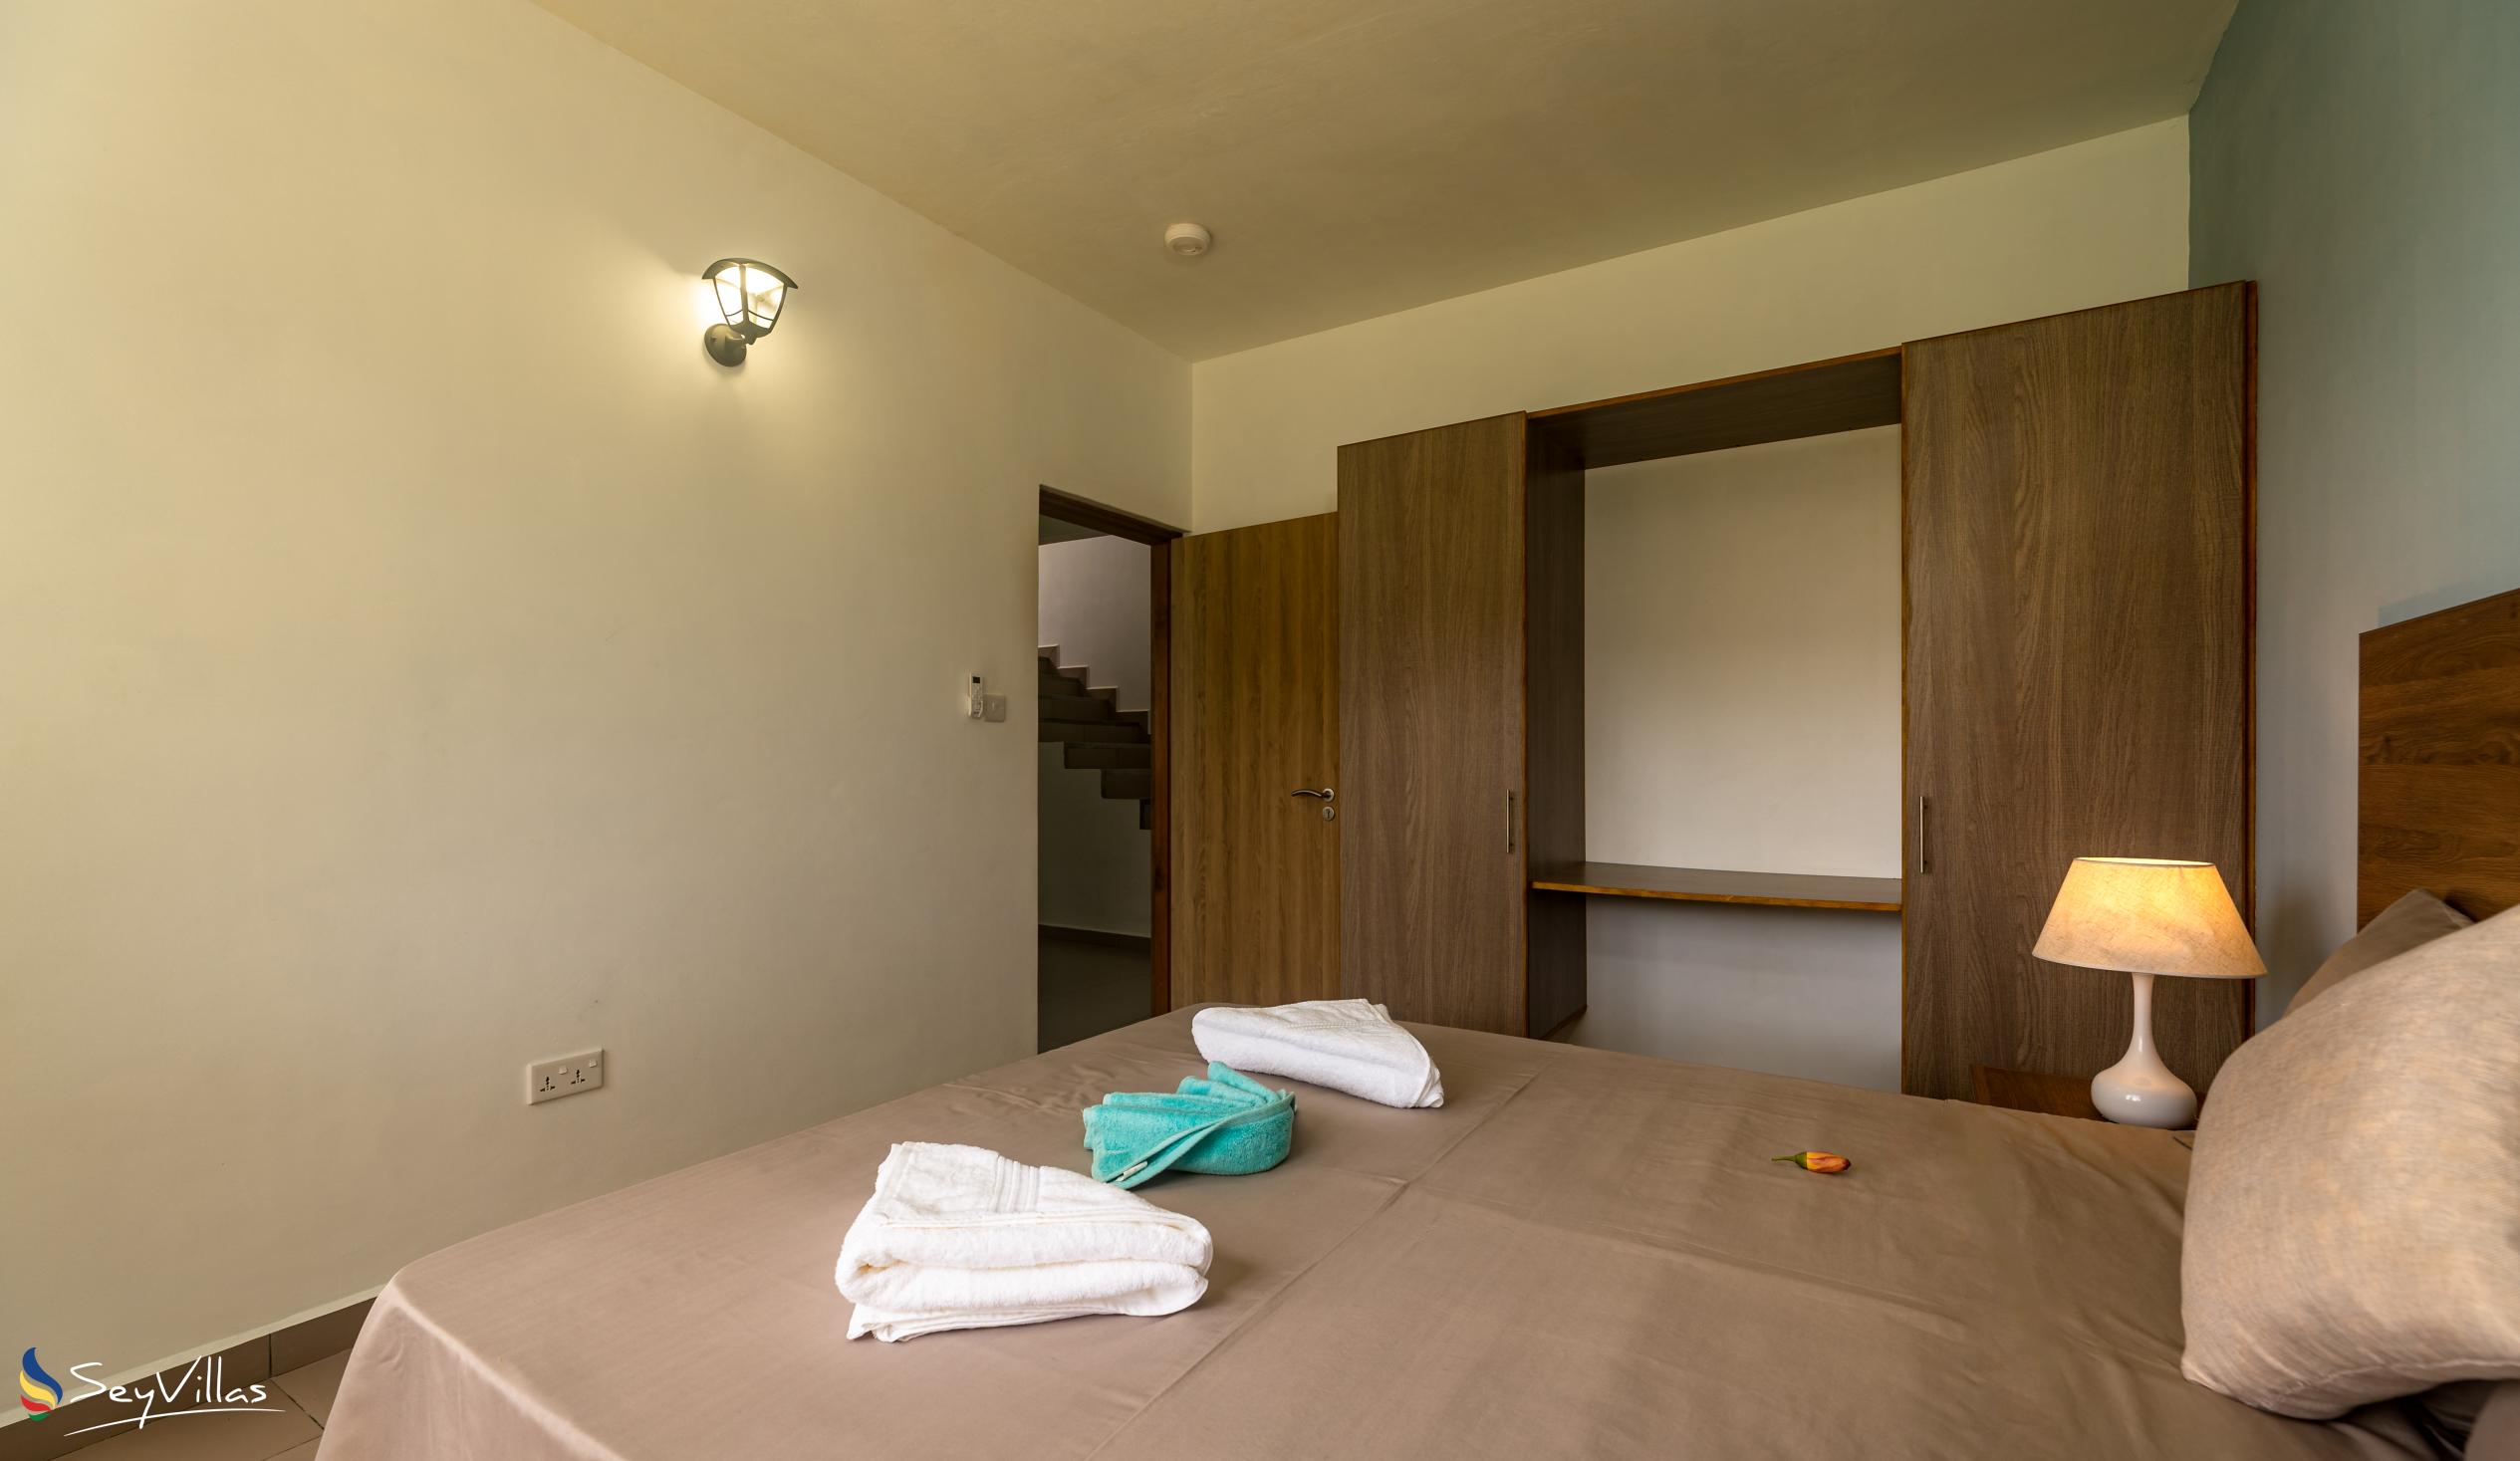 Foto 57: Maison Dora - Villa mit 2 Schlafzimmern - Mahé (Seychellen)